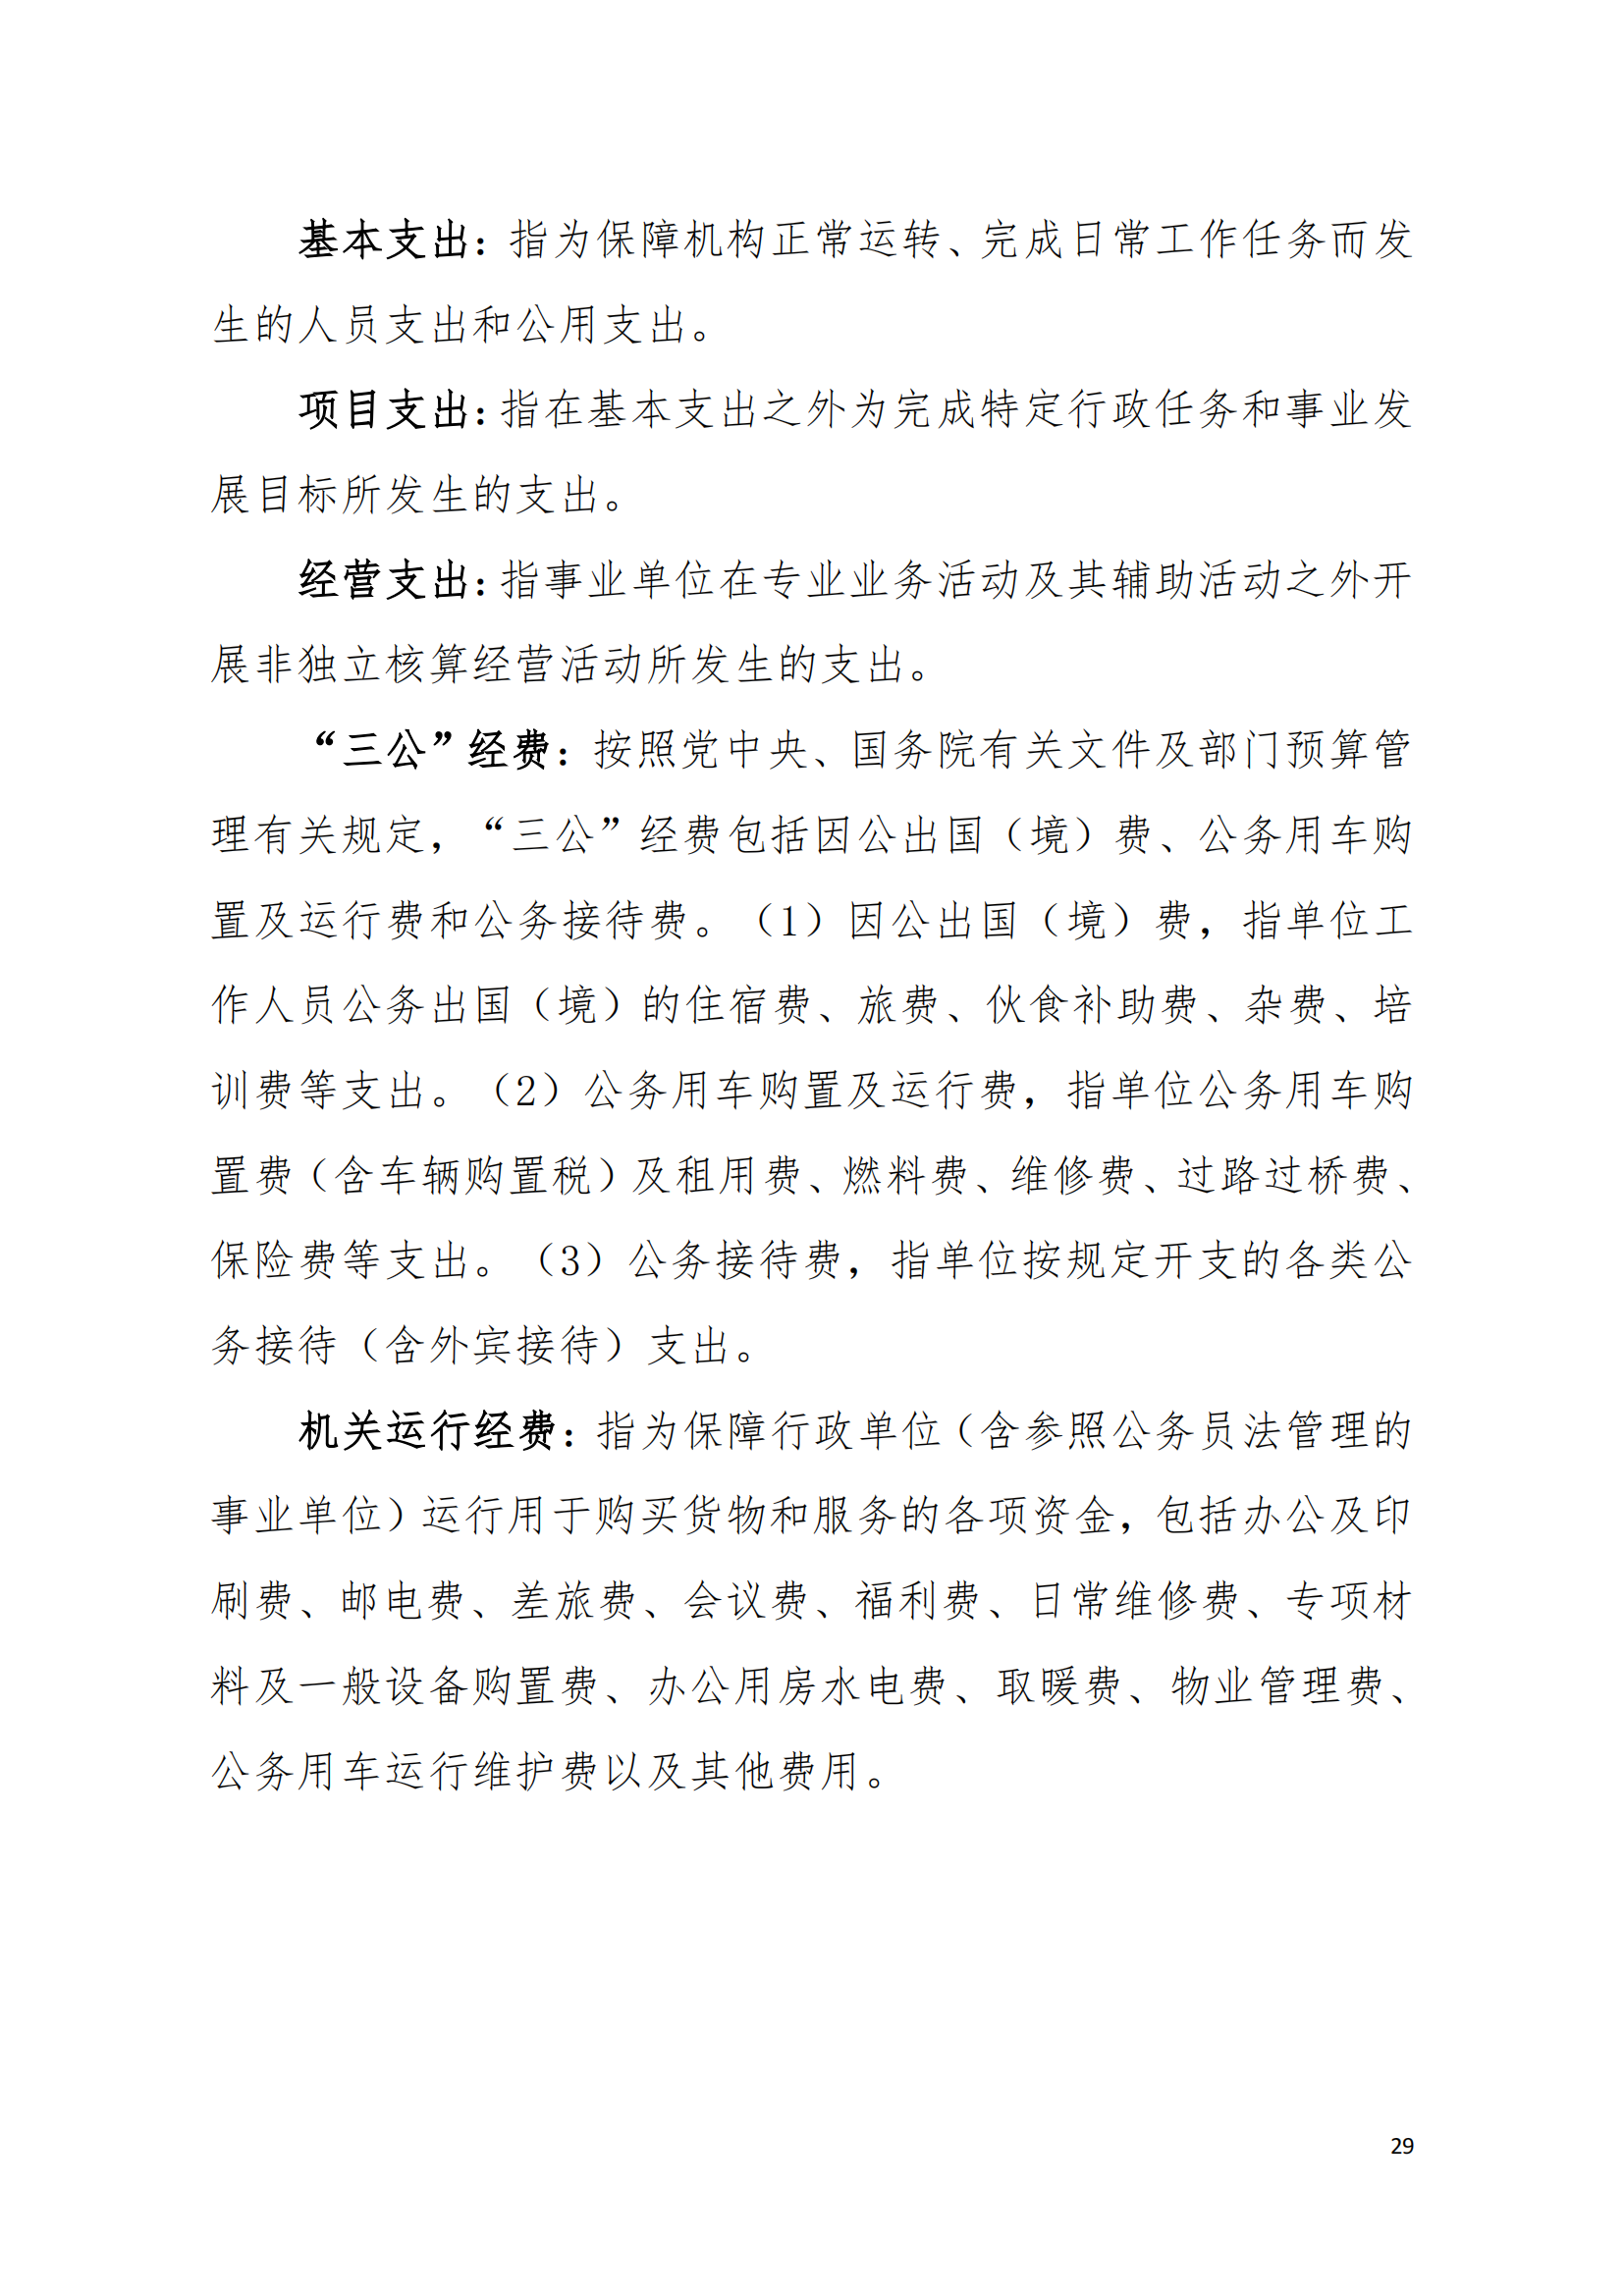 2021年中国致公党广东省委员会部门决算（0706更新）_28.png